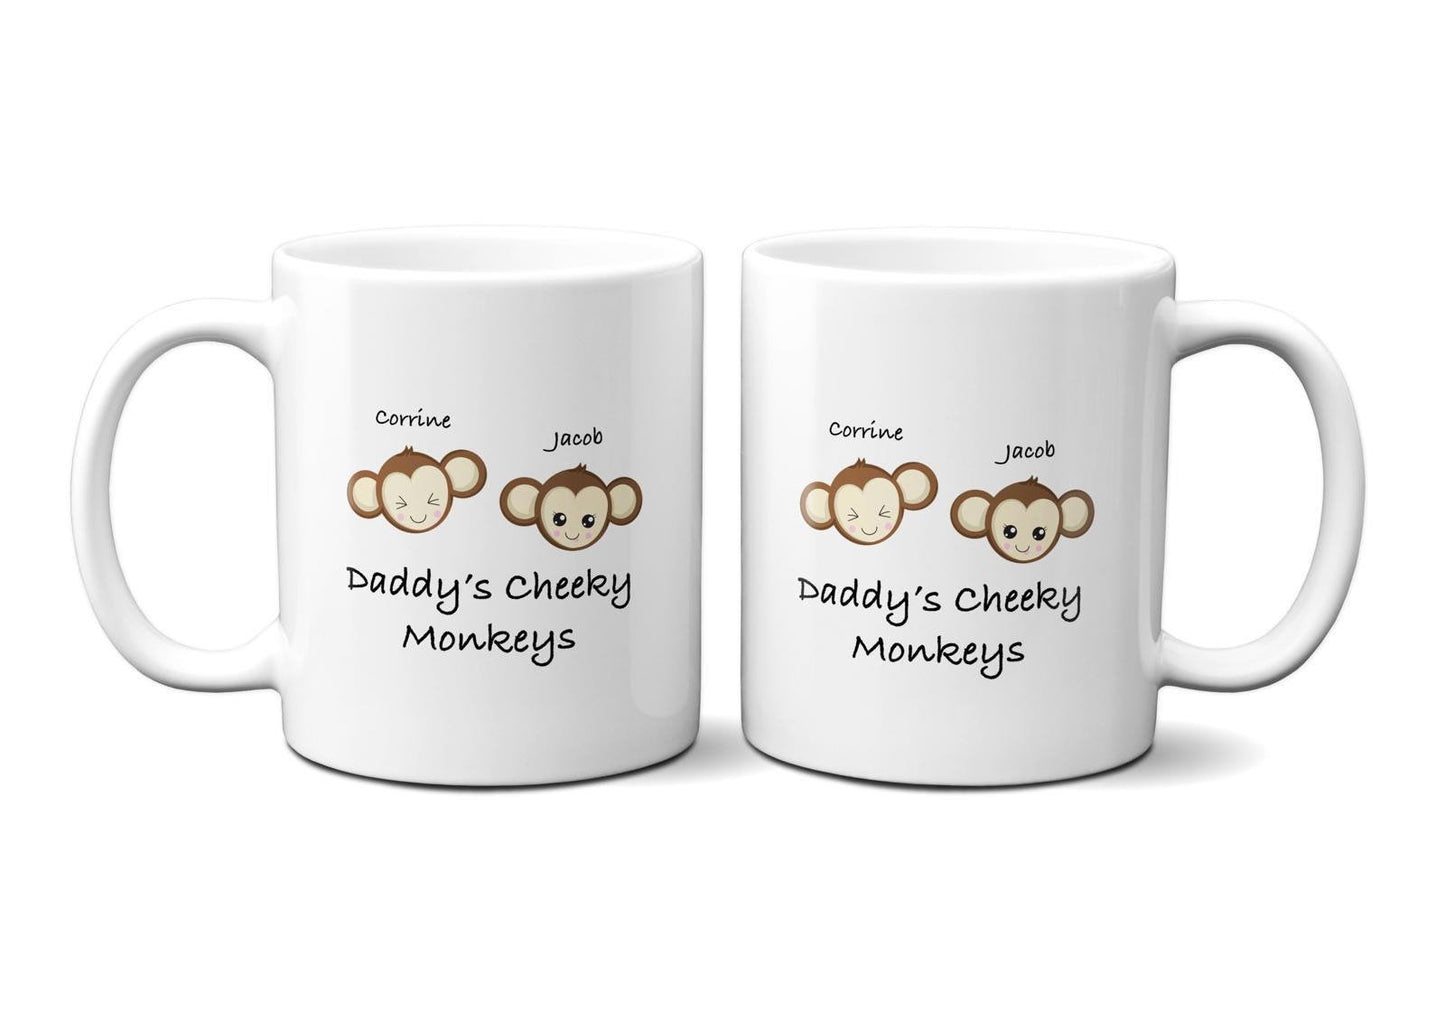 Custom Mug for Dad - Daddy&#39;s Cheeky Monkey Mug for Birthday Gift Ideas